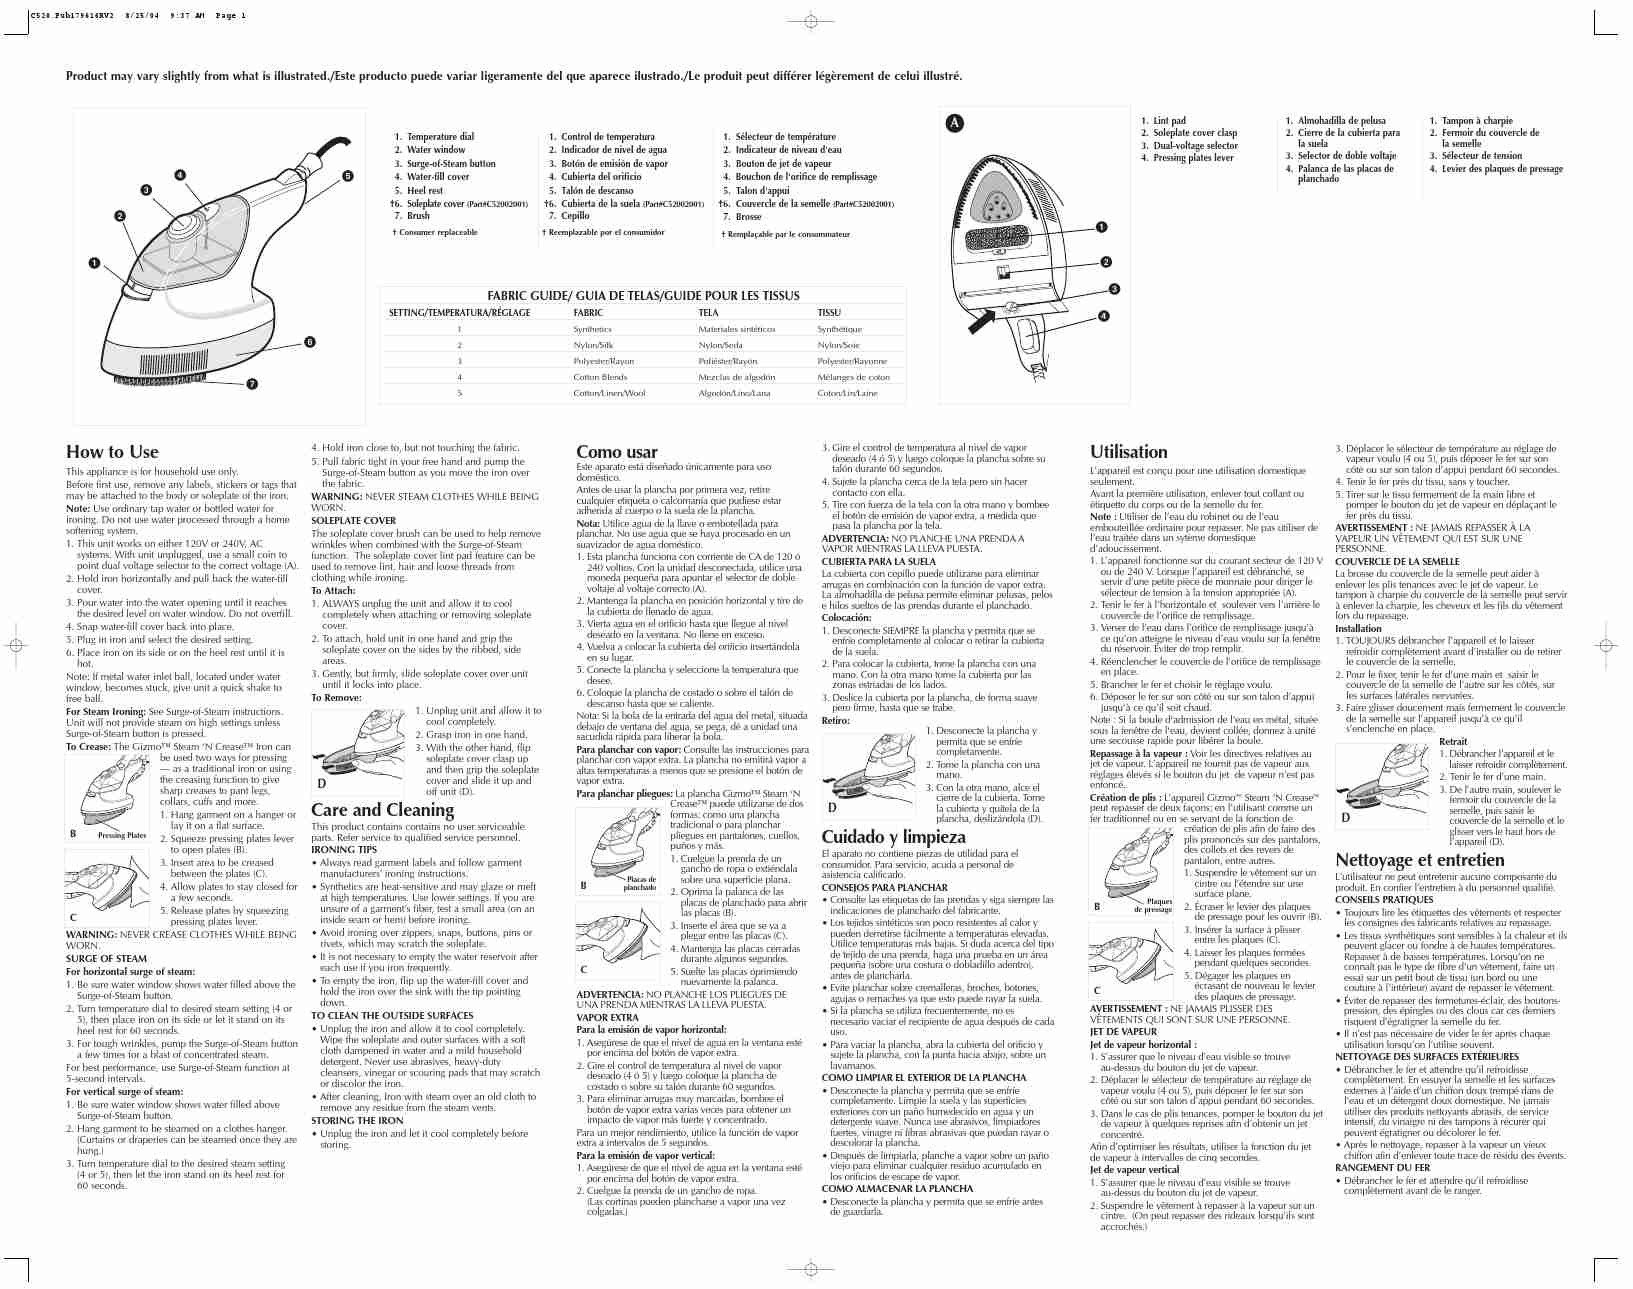 BLACK & DECKER C520-page_pdf